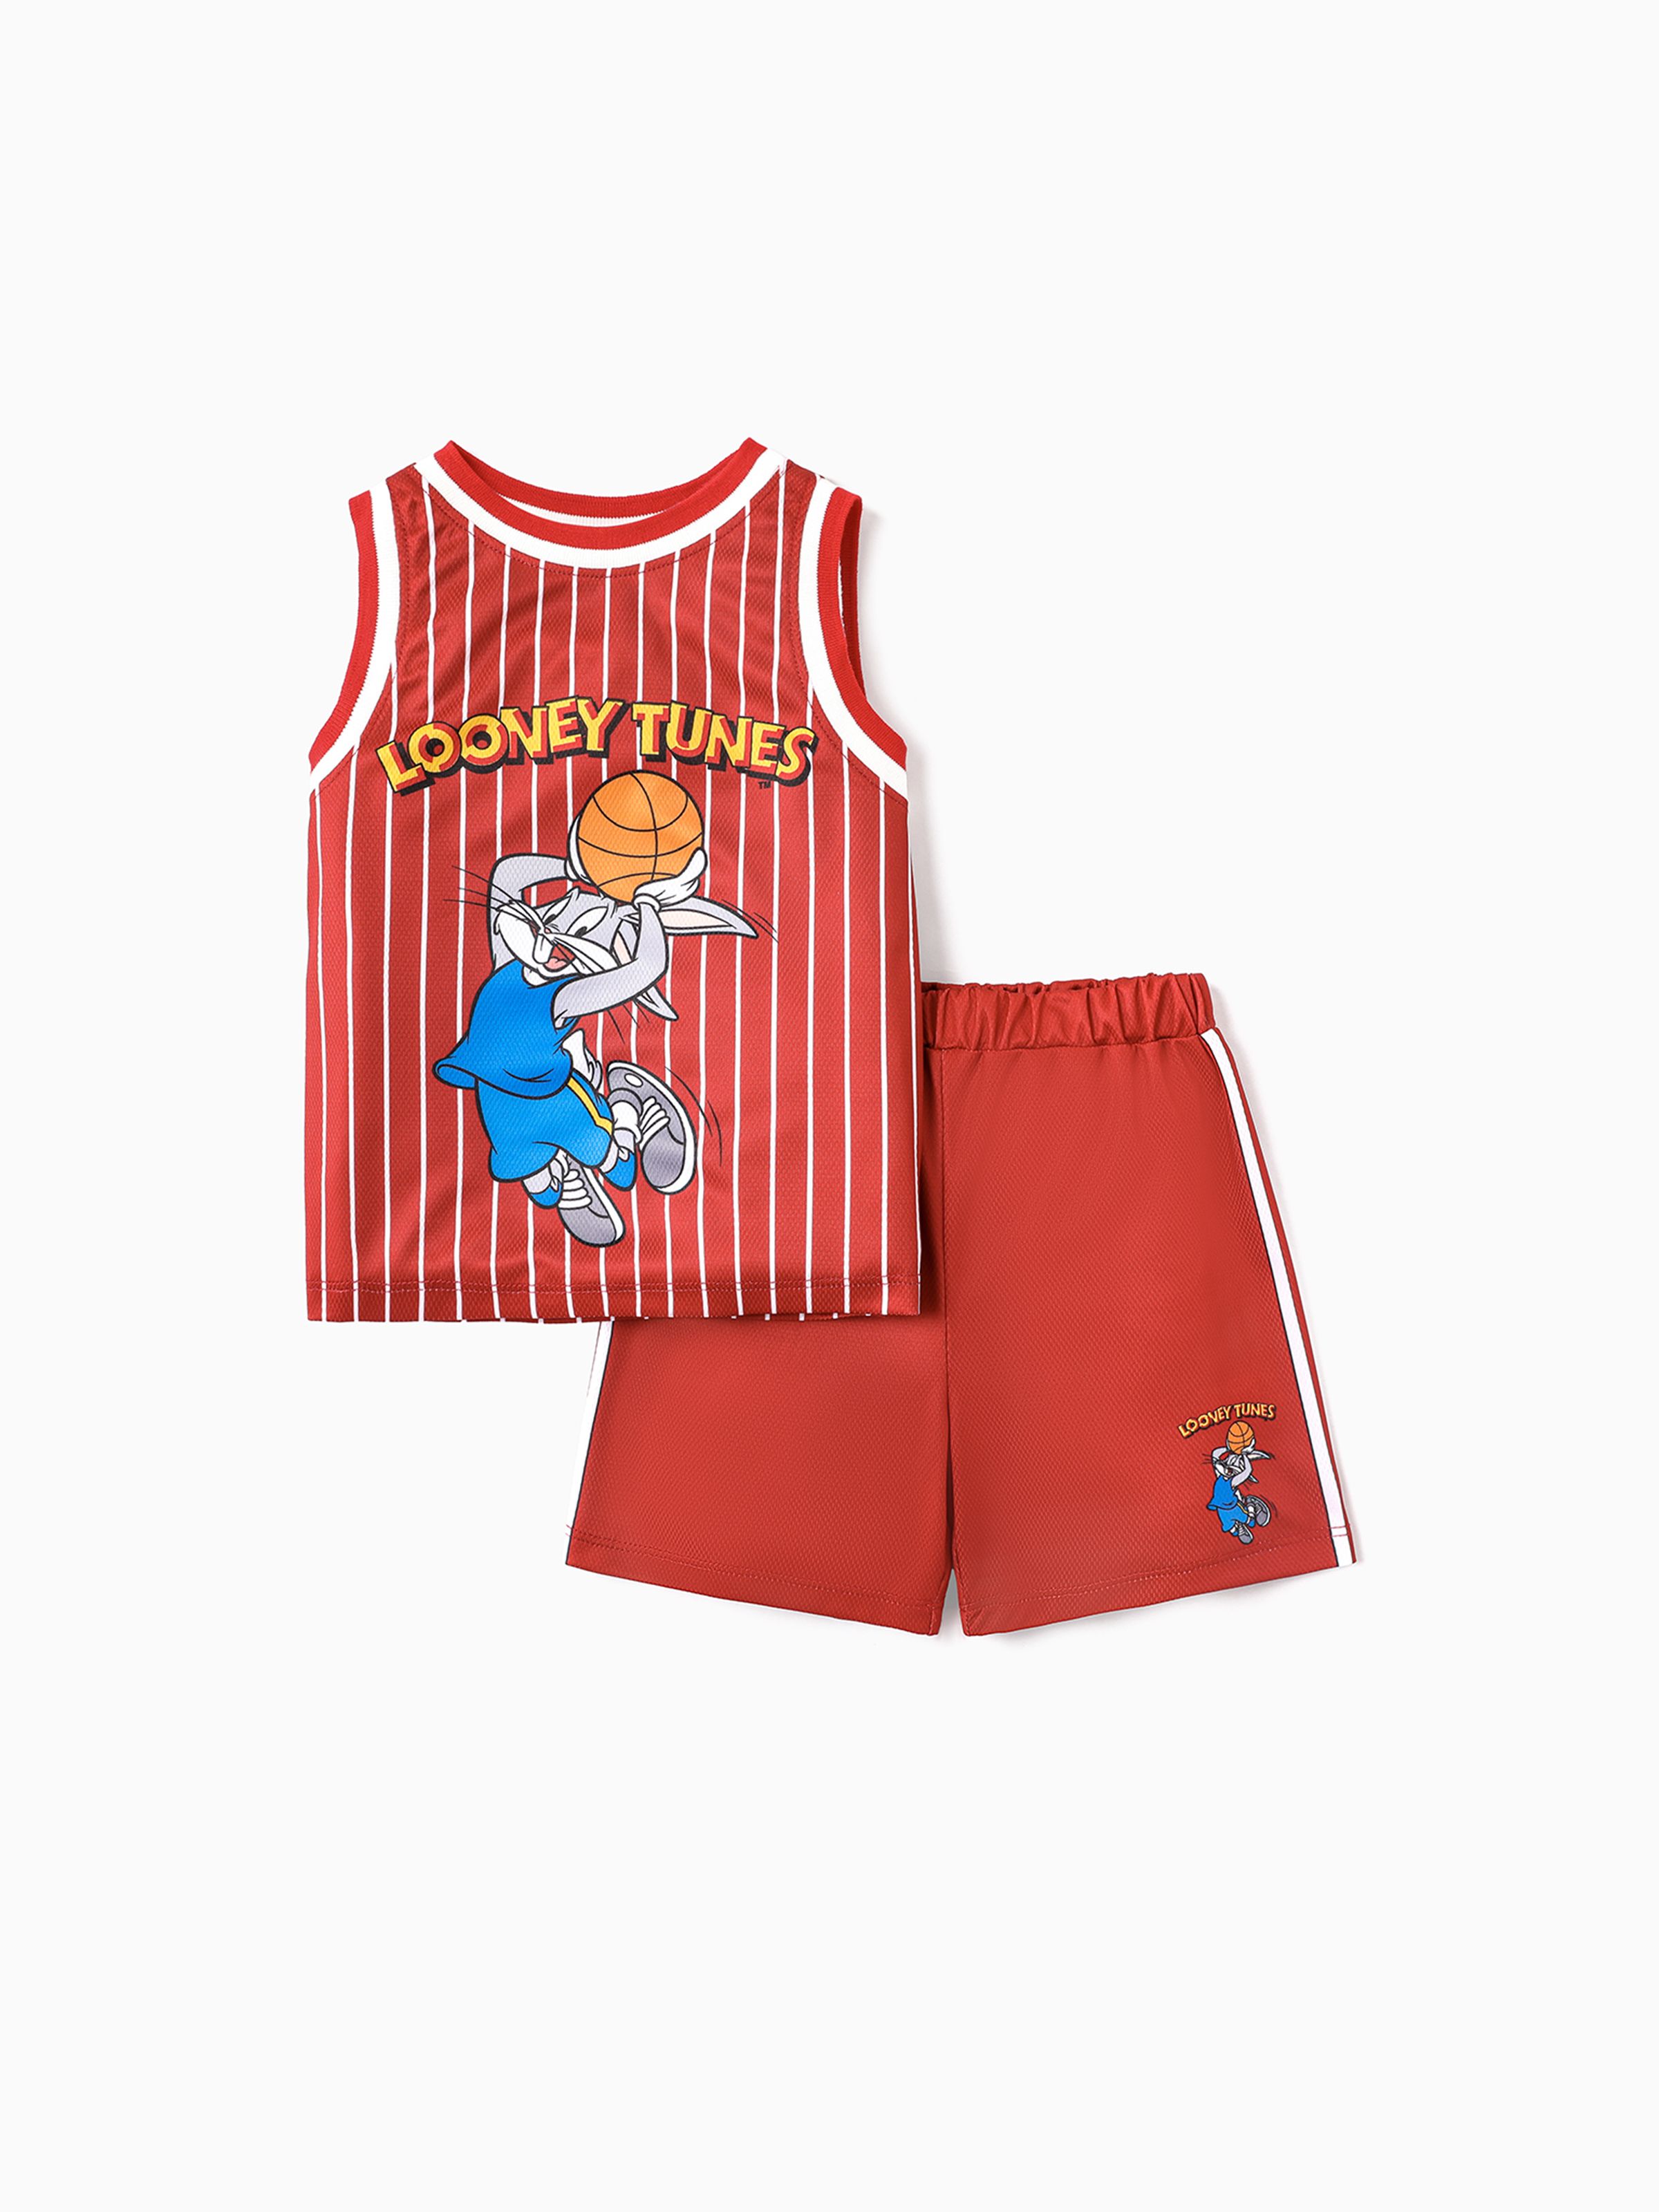 

Looney Tunes Toddler/Kid Boy 2pcs Basketball & Character Print Tank Top and Shorts Set